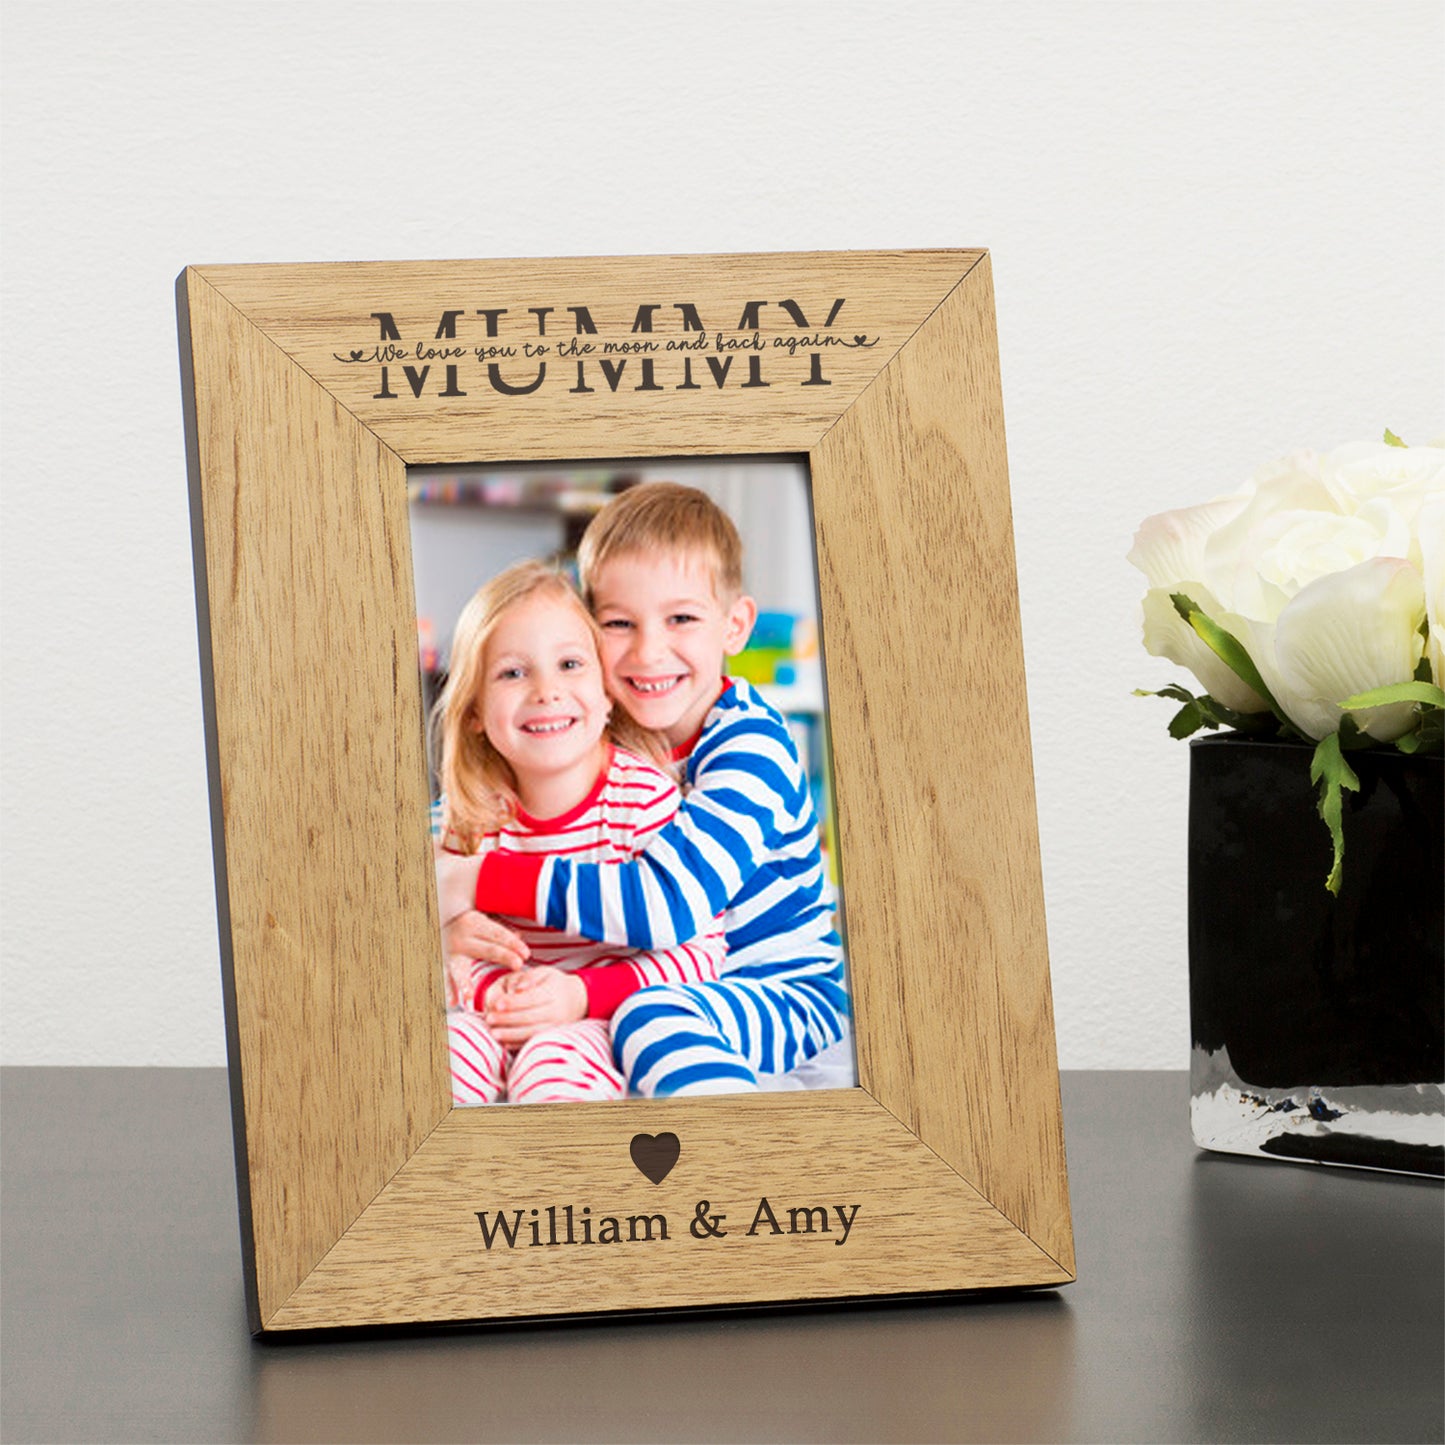 Personalised Mummy Wood Photo Frame 6x4